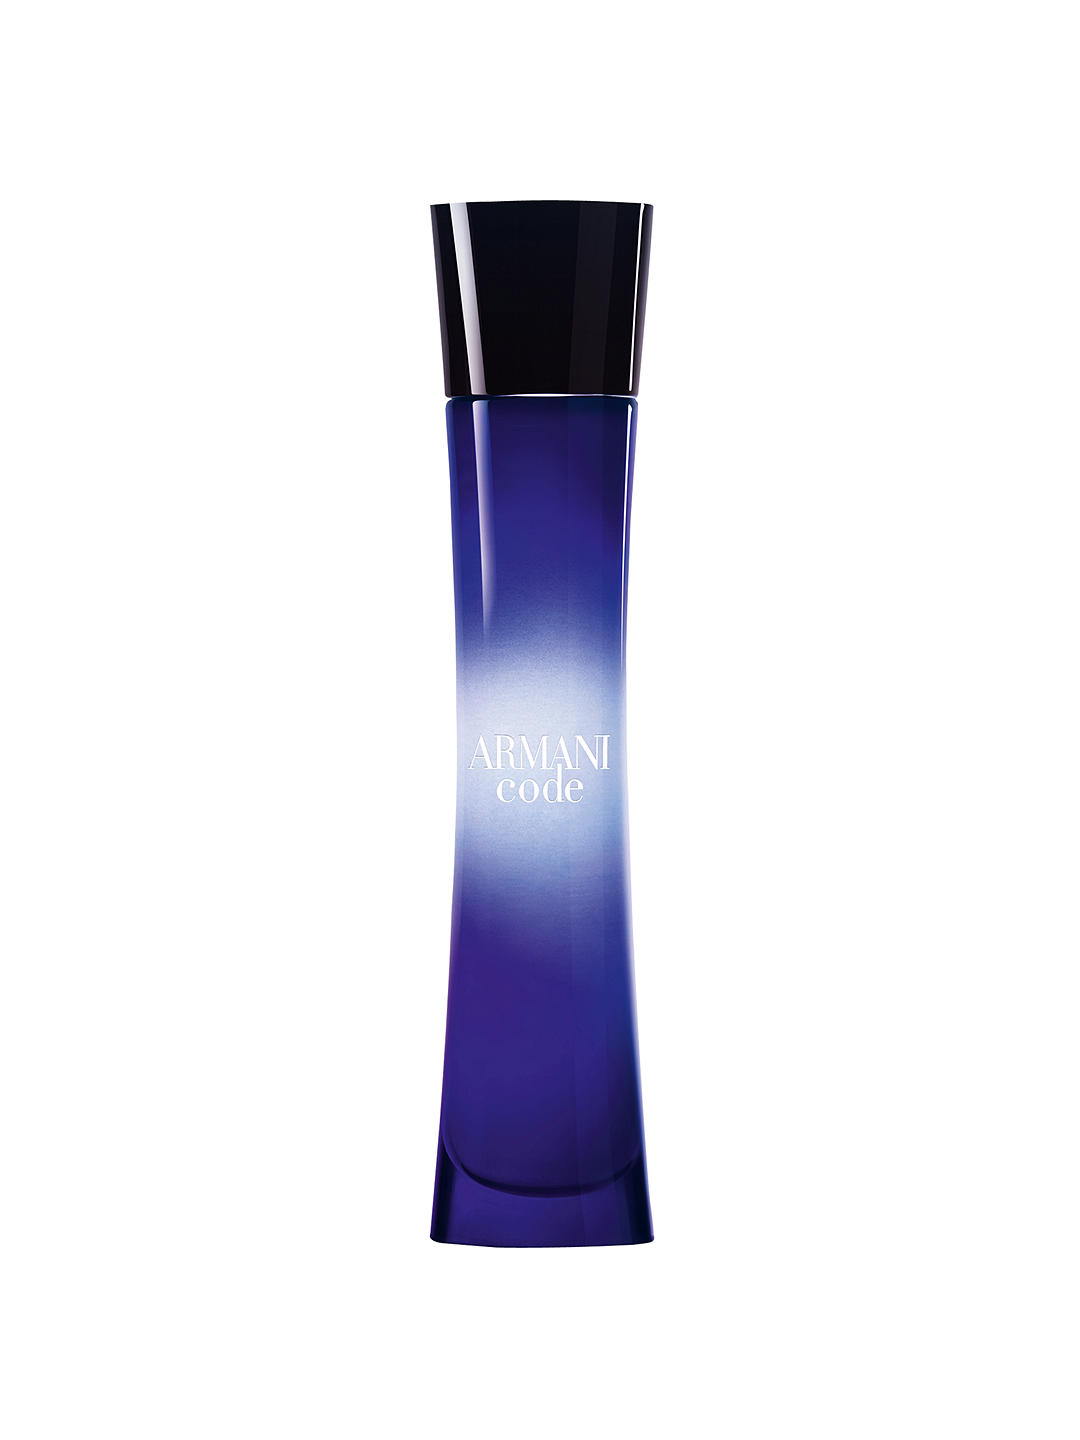 Giorgio Armani Code For Women Eau de Parfum, 50ml 1